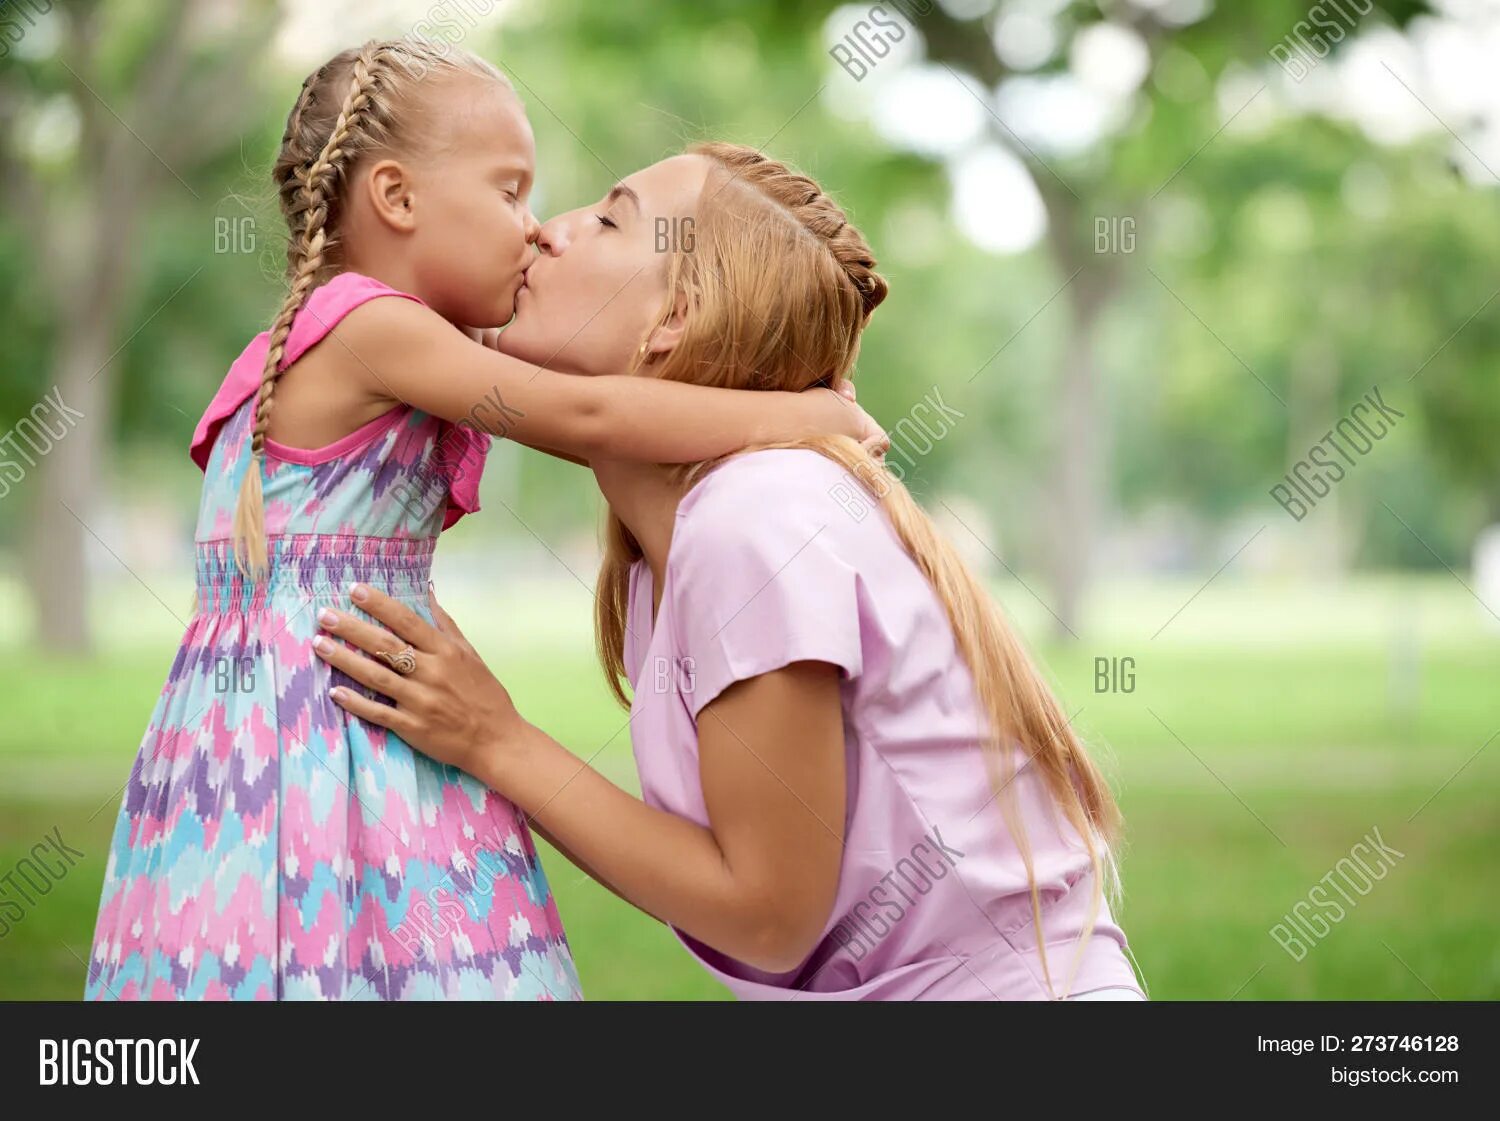 Moms girl lesbian. Мама с дочкой поцелуй. Мама целует дочку в губы. Поцелуй девочки с мамой. Мама целует дочку с языком.